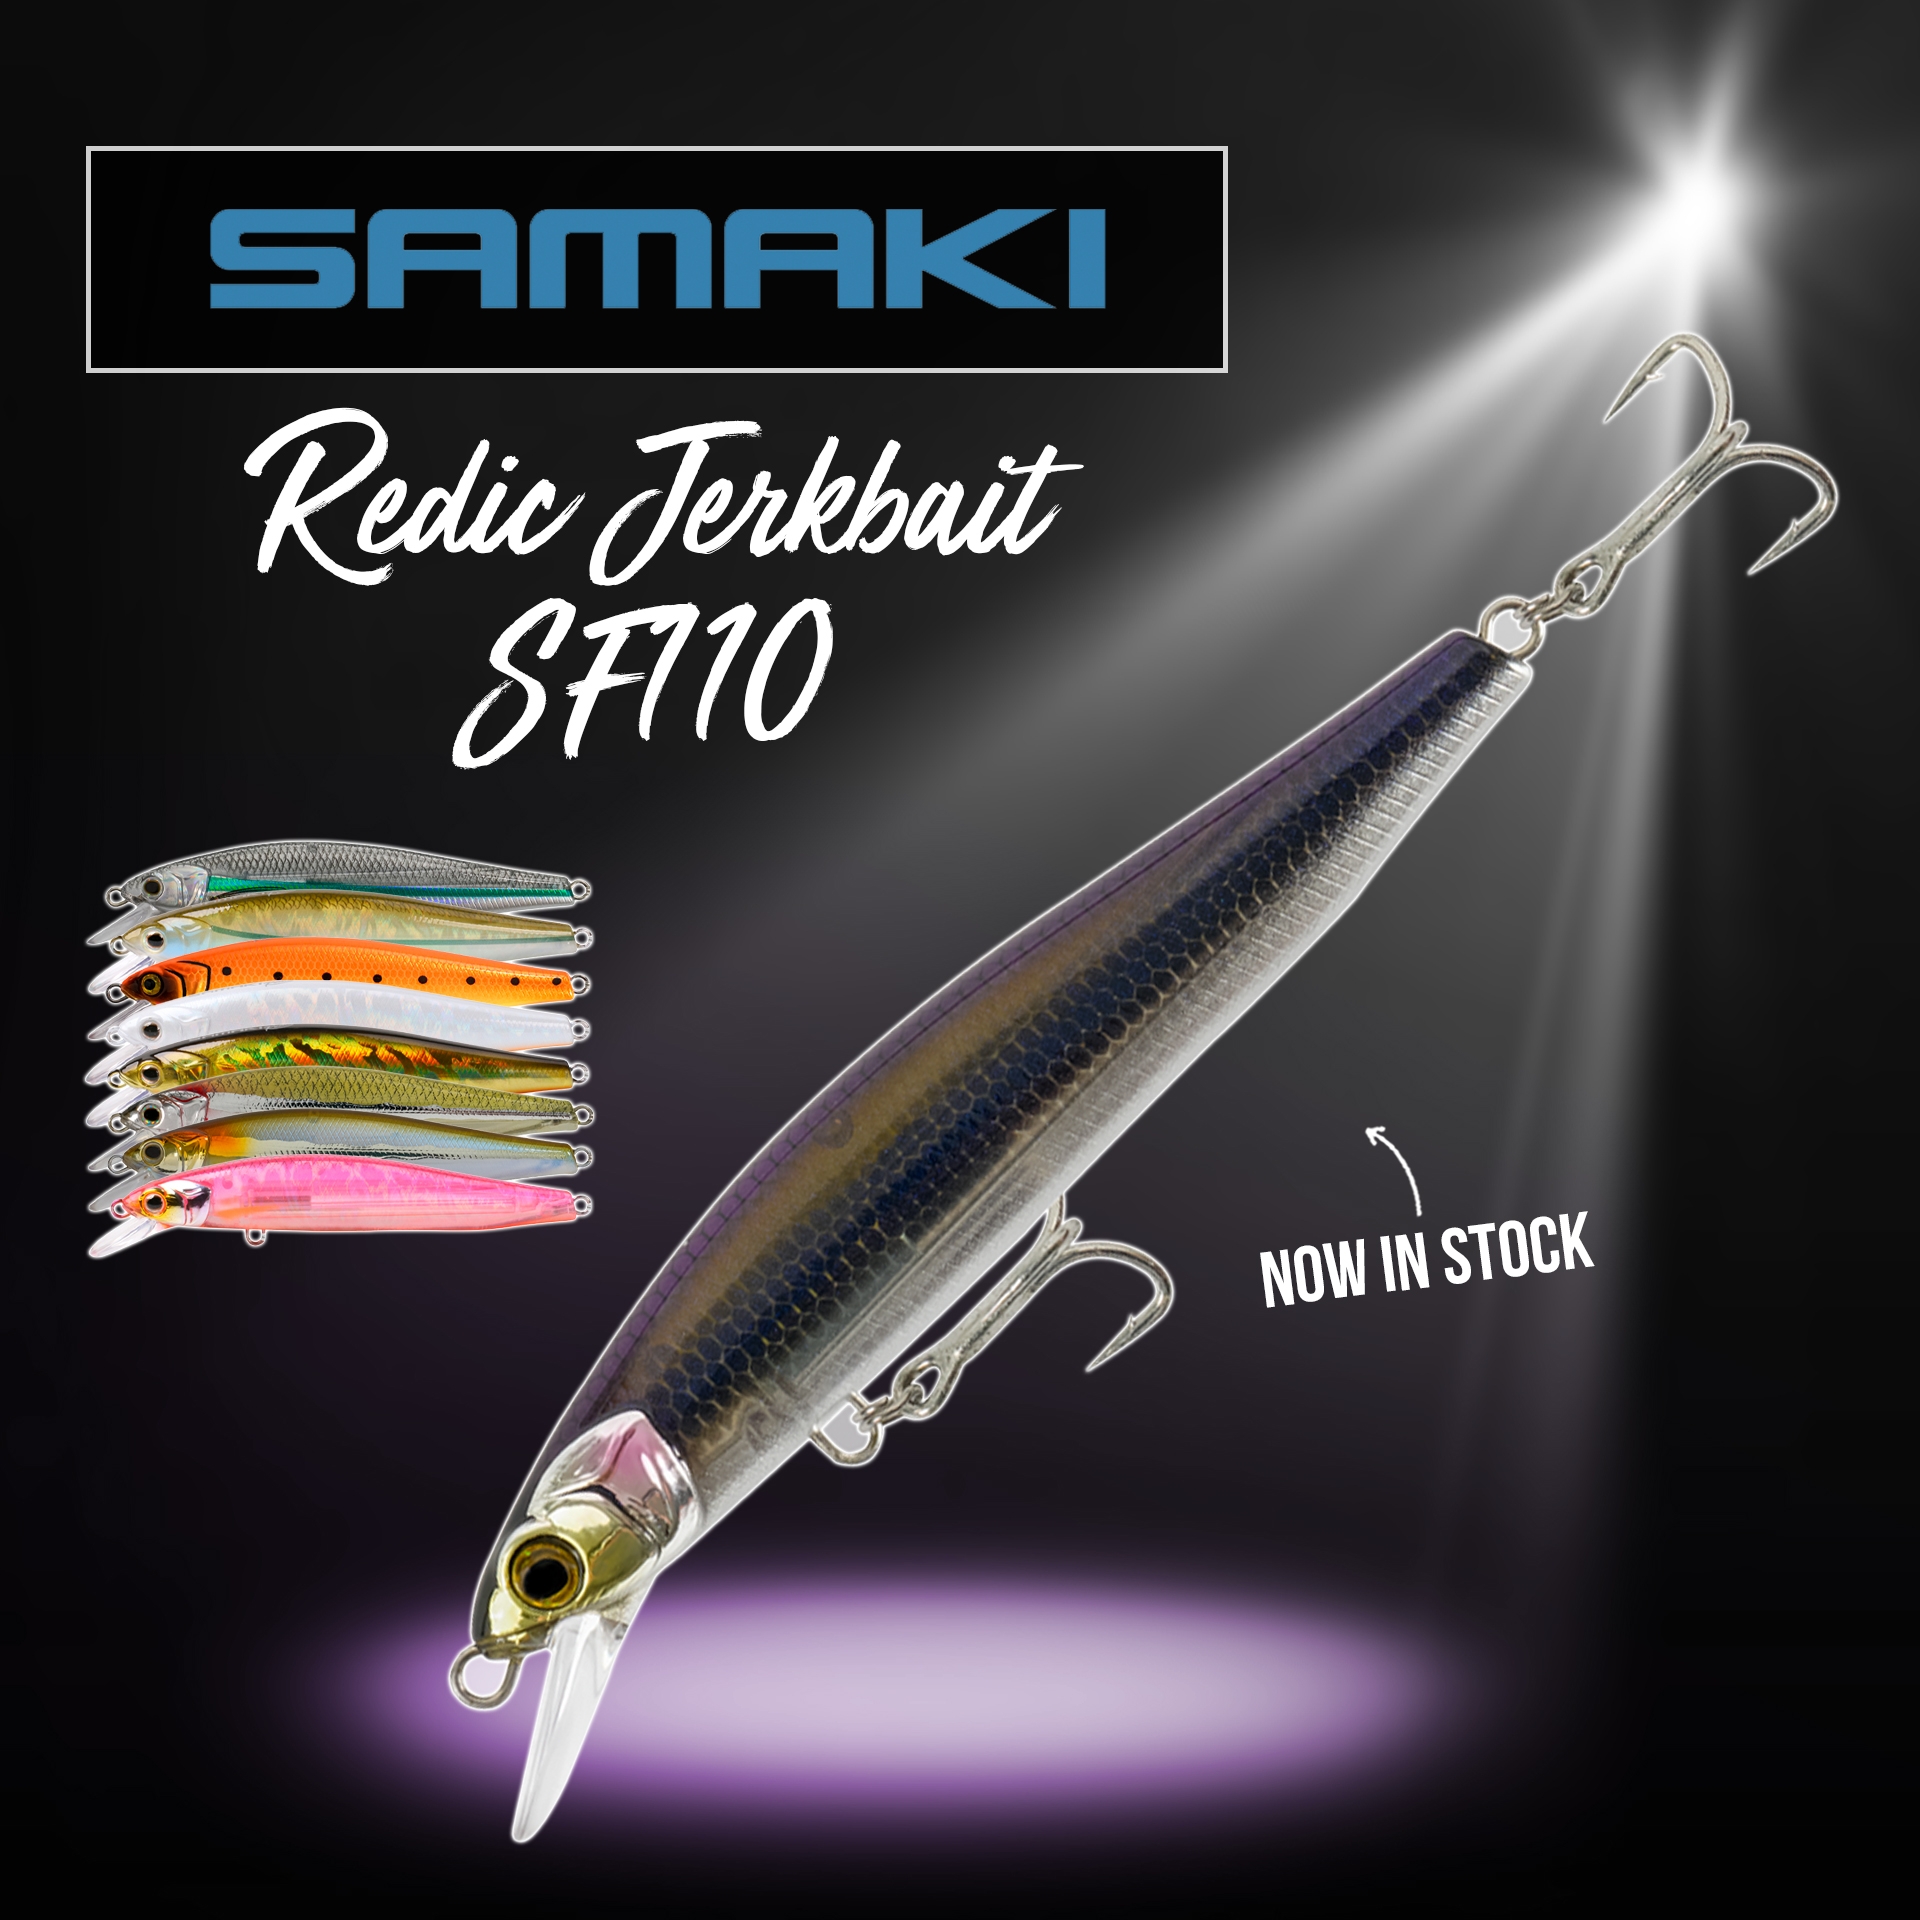 New - SAMAKI REDIC JERKBAIT SF110 LURE